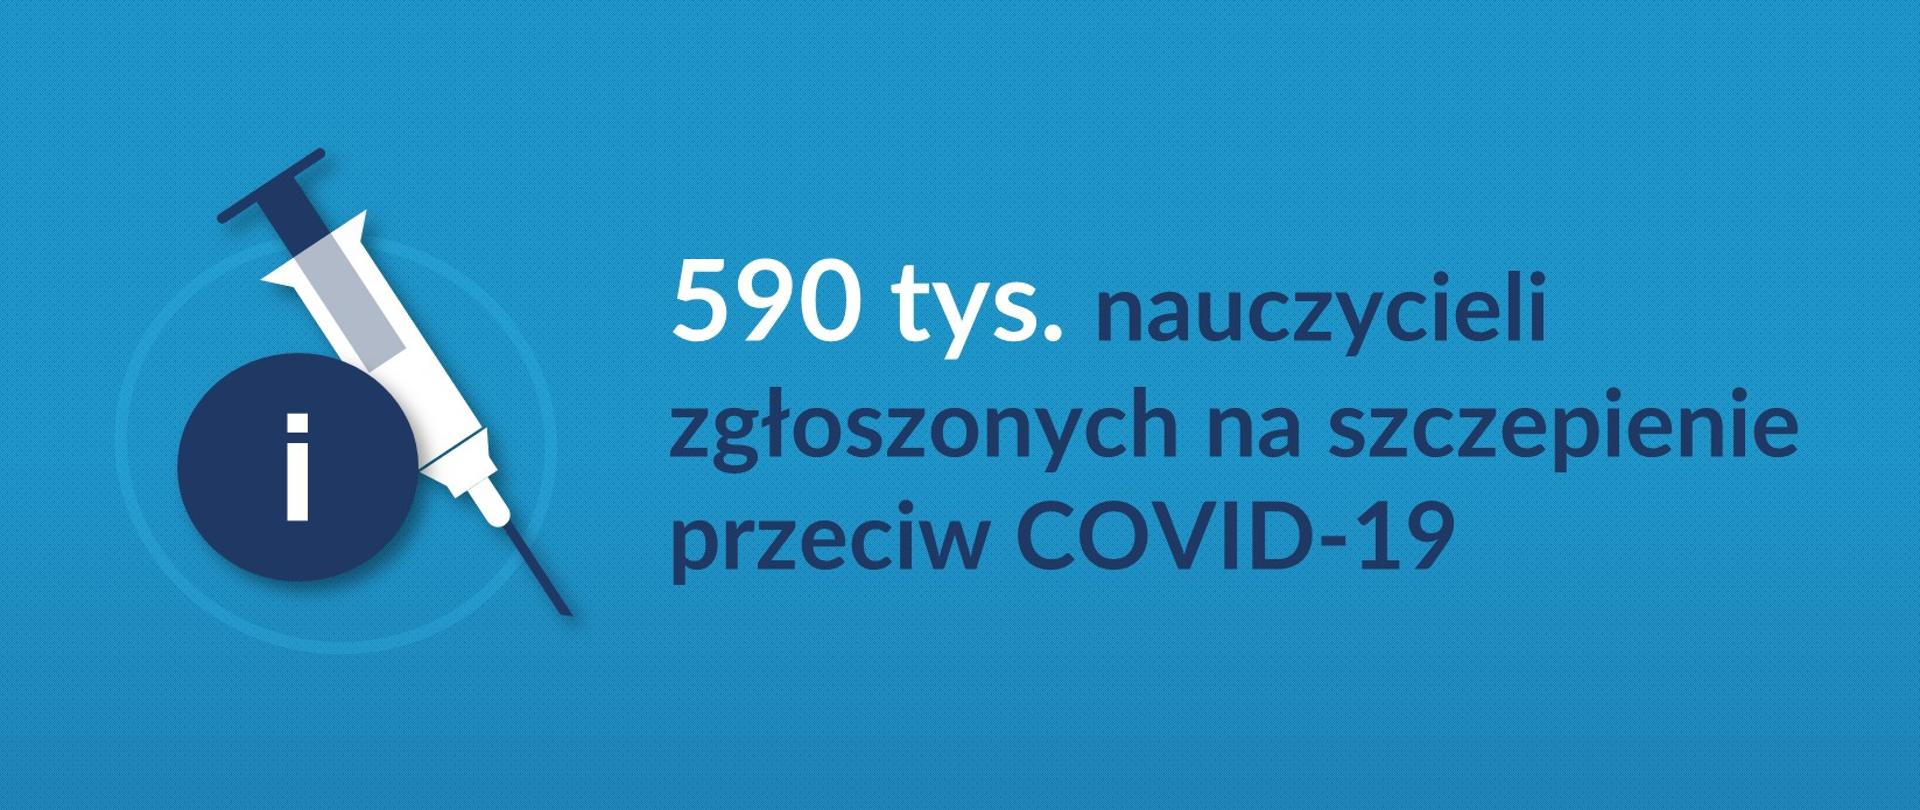 Grafika z tekstem: 590 tys. nauczycieli zgłoszonych na szczepienie przeciw COVID-19